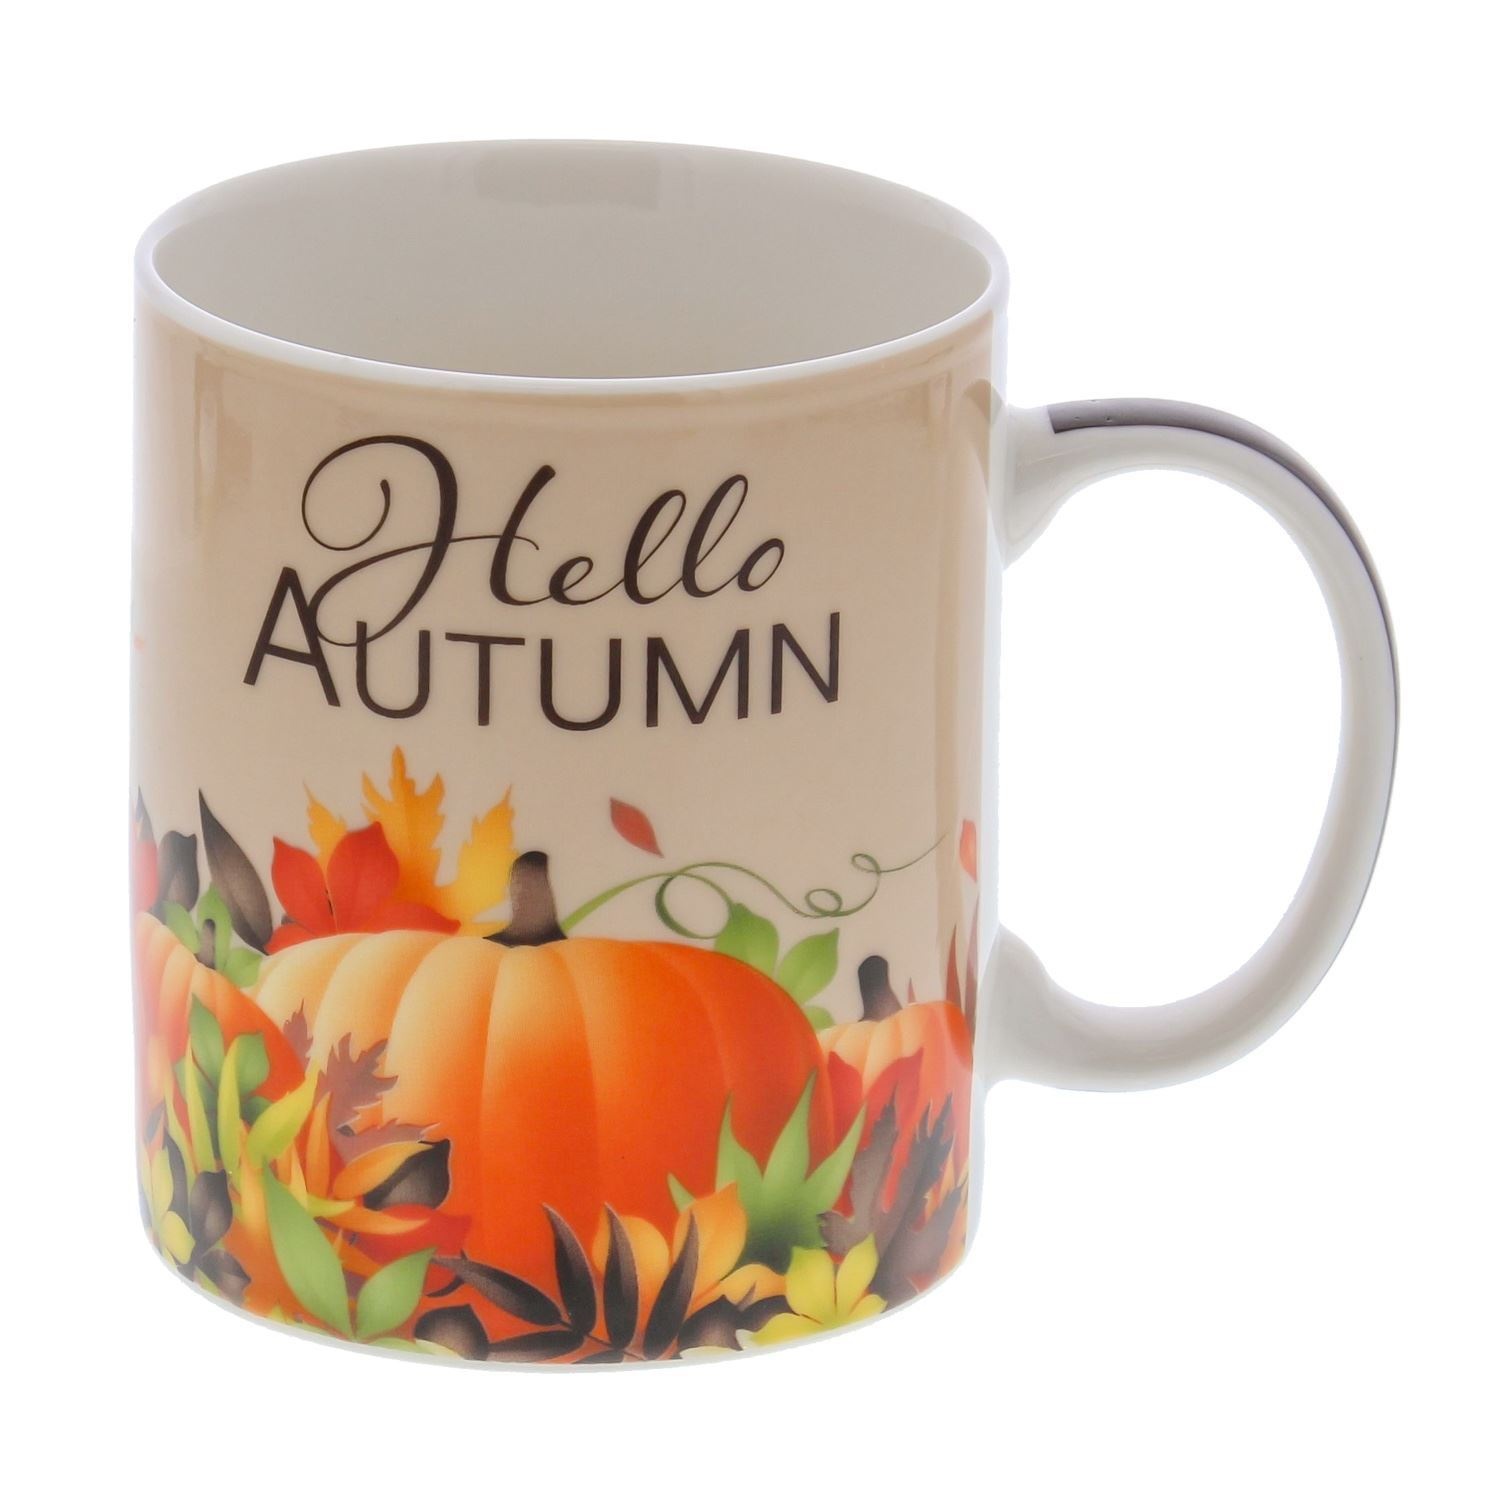 Hello Autumn "Musky" mug - 120*80*95 mm - 12 pieces